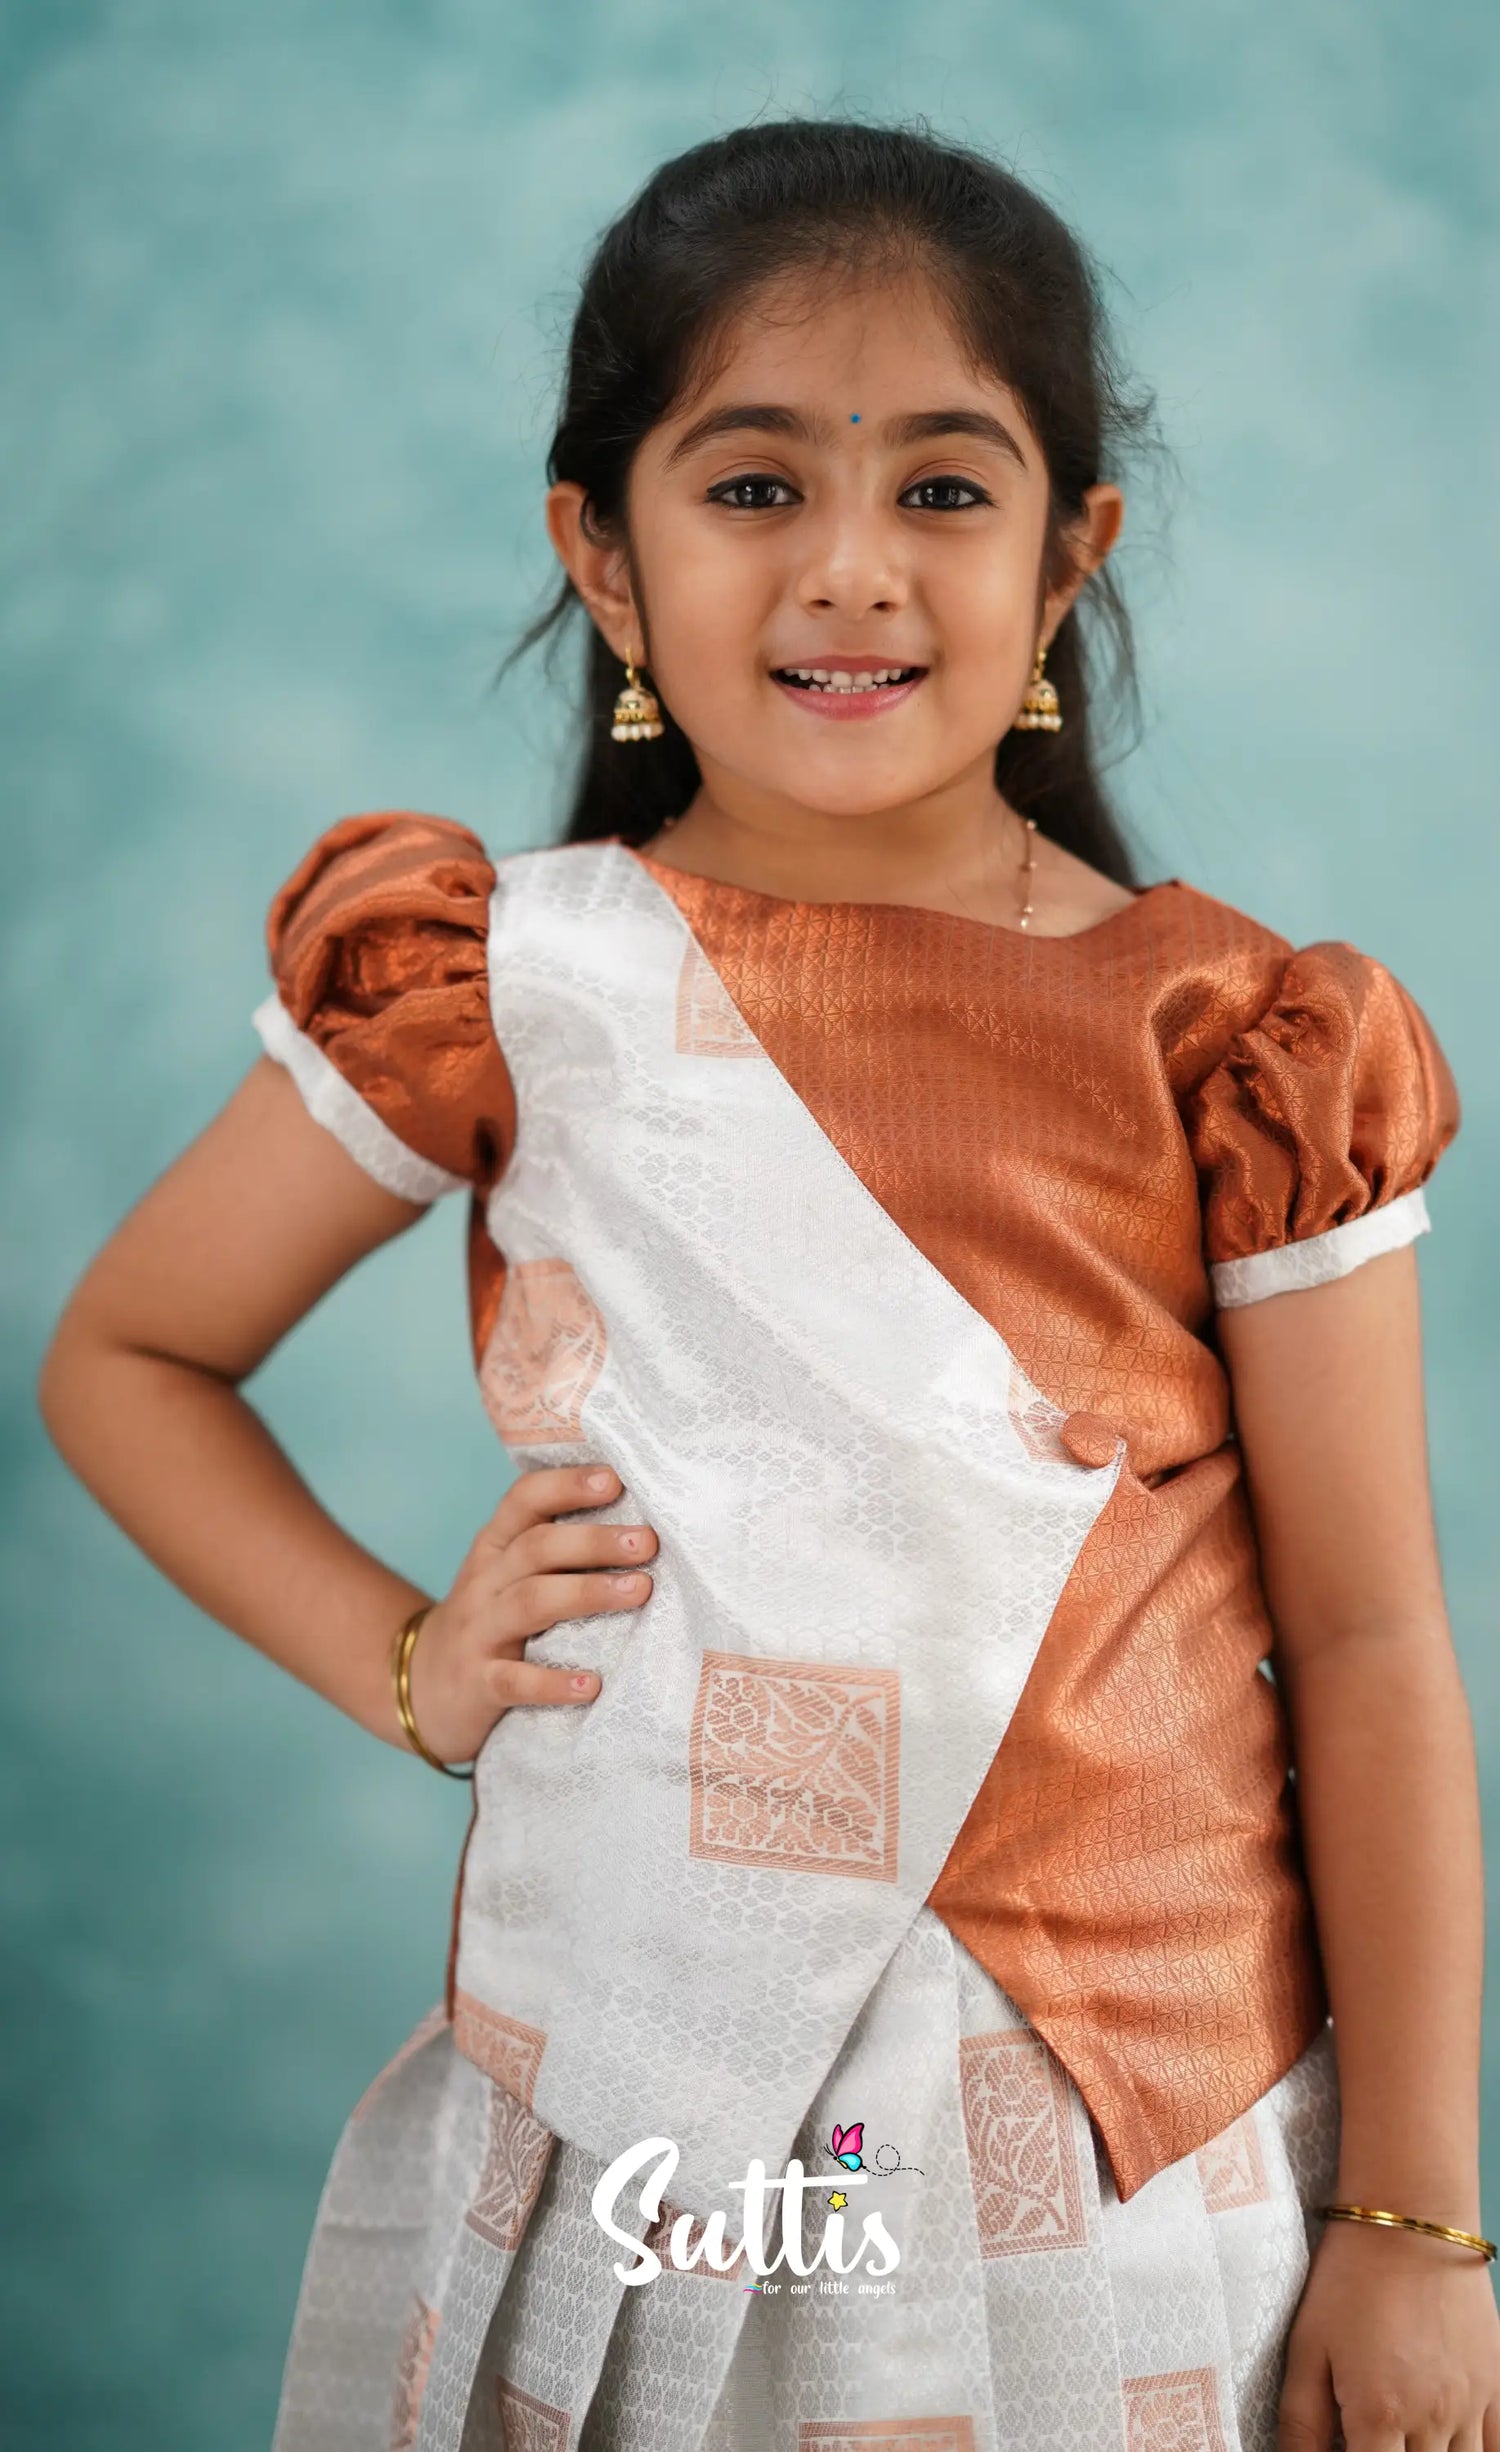 Padmakshi - White And Rust Blended Silk Pavadai Sattai Kids-Suttis